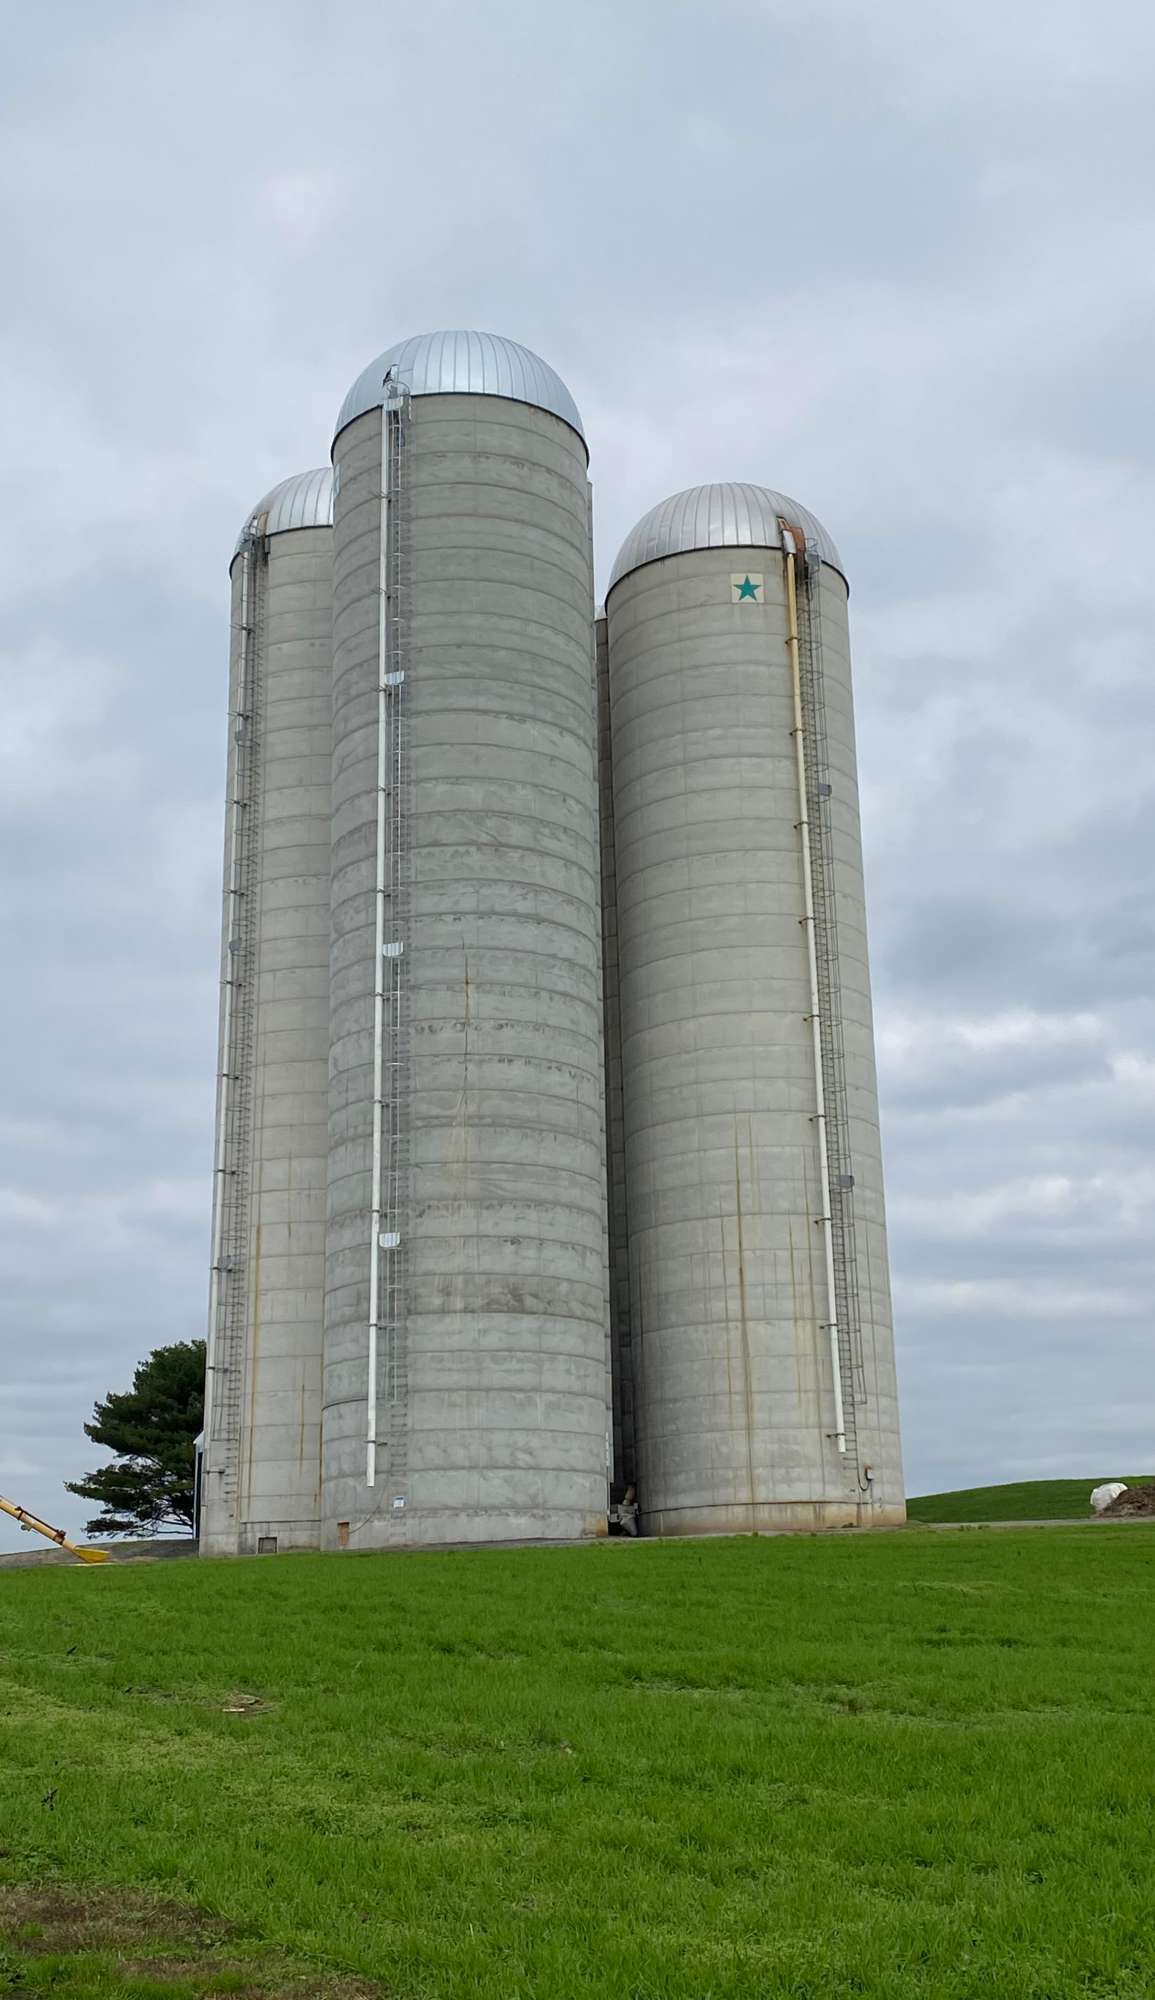 wire corn silo for sale